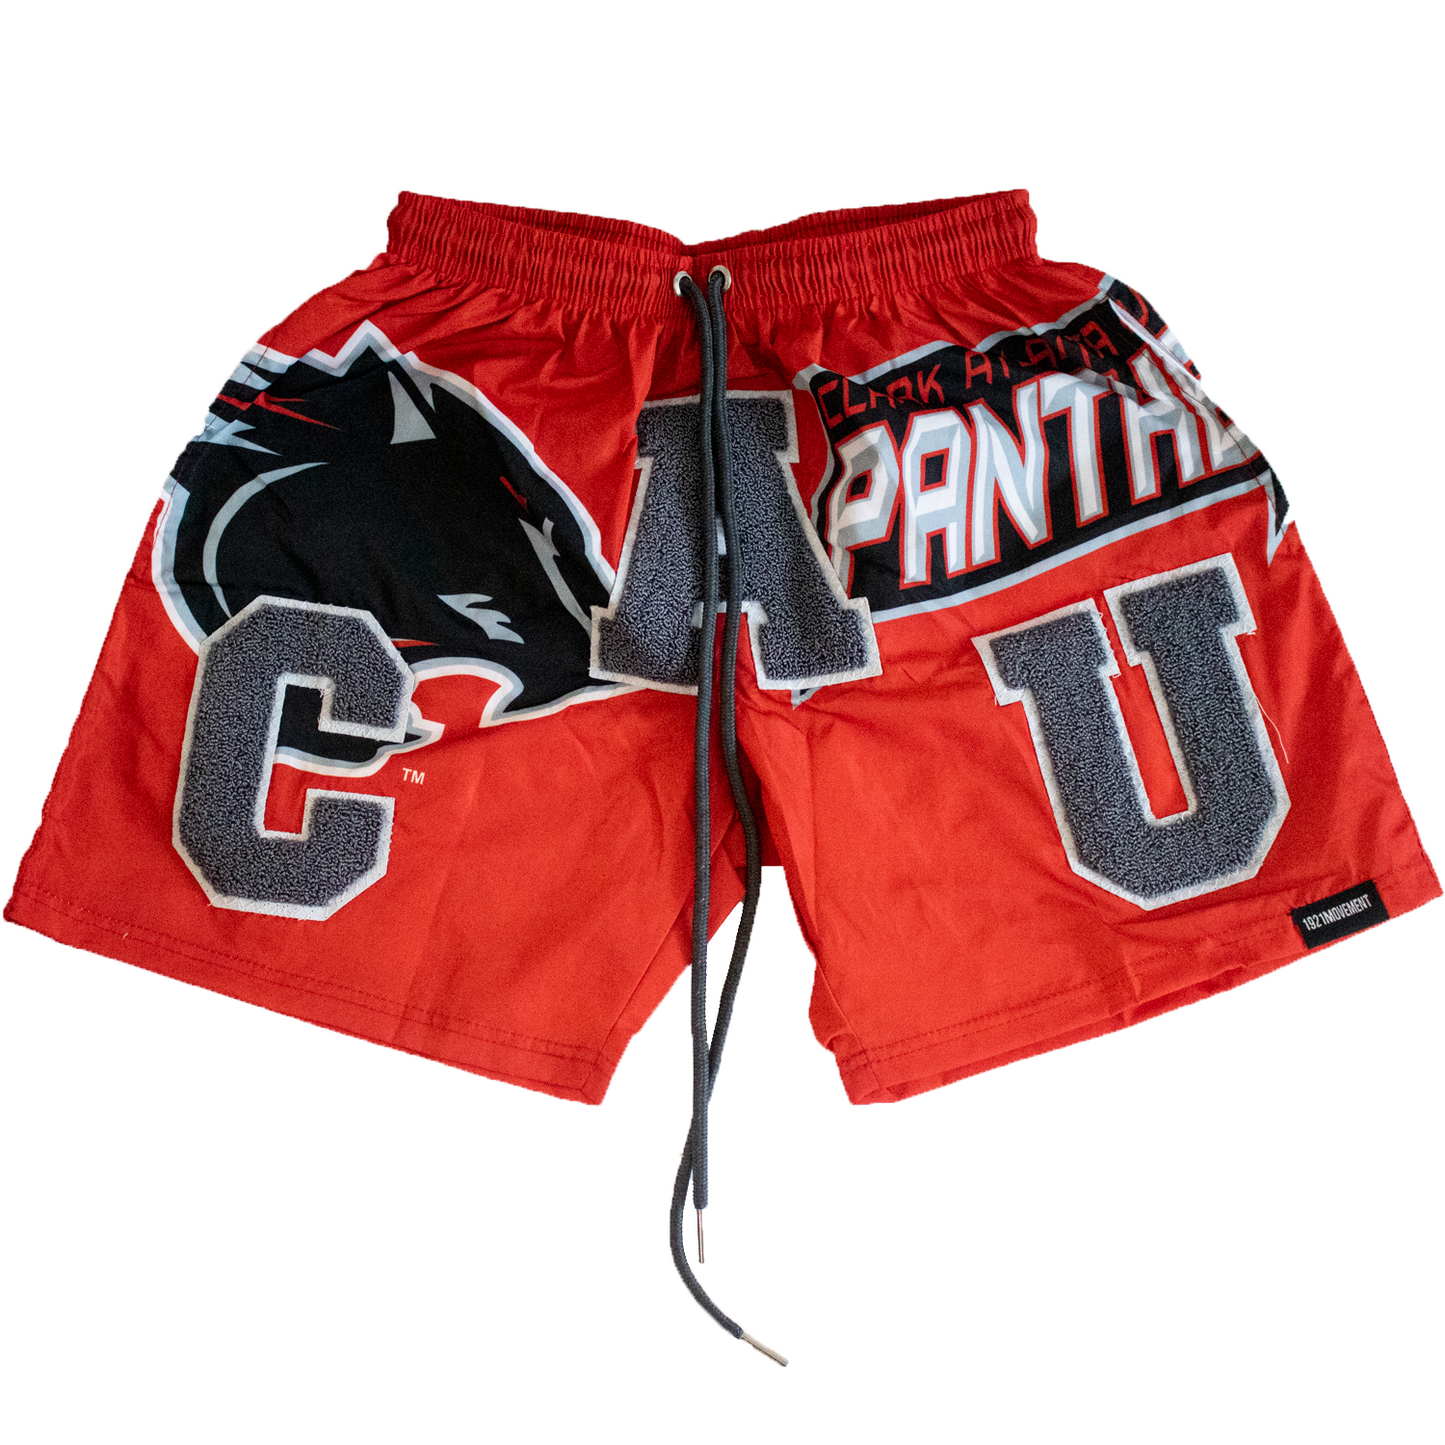 Clark Atlanta Red Shorts